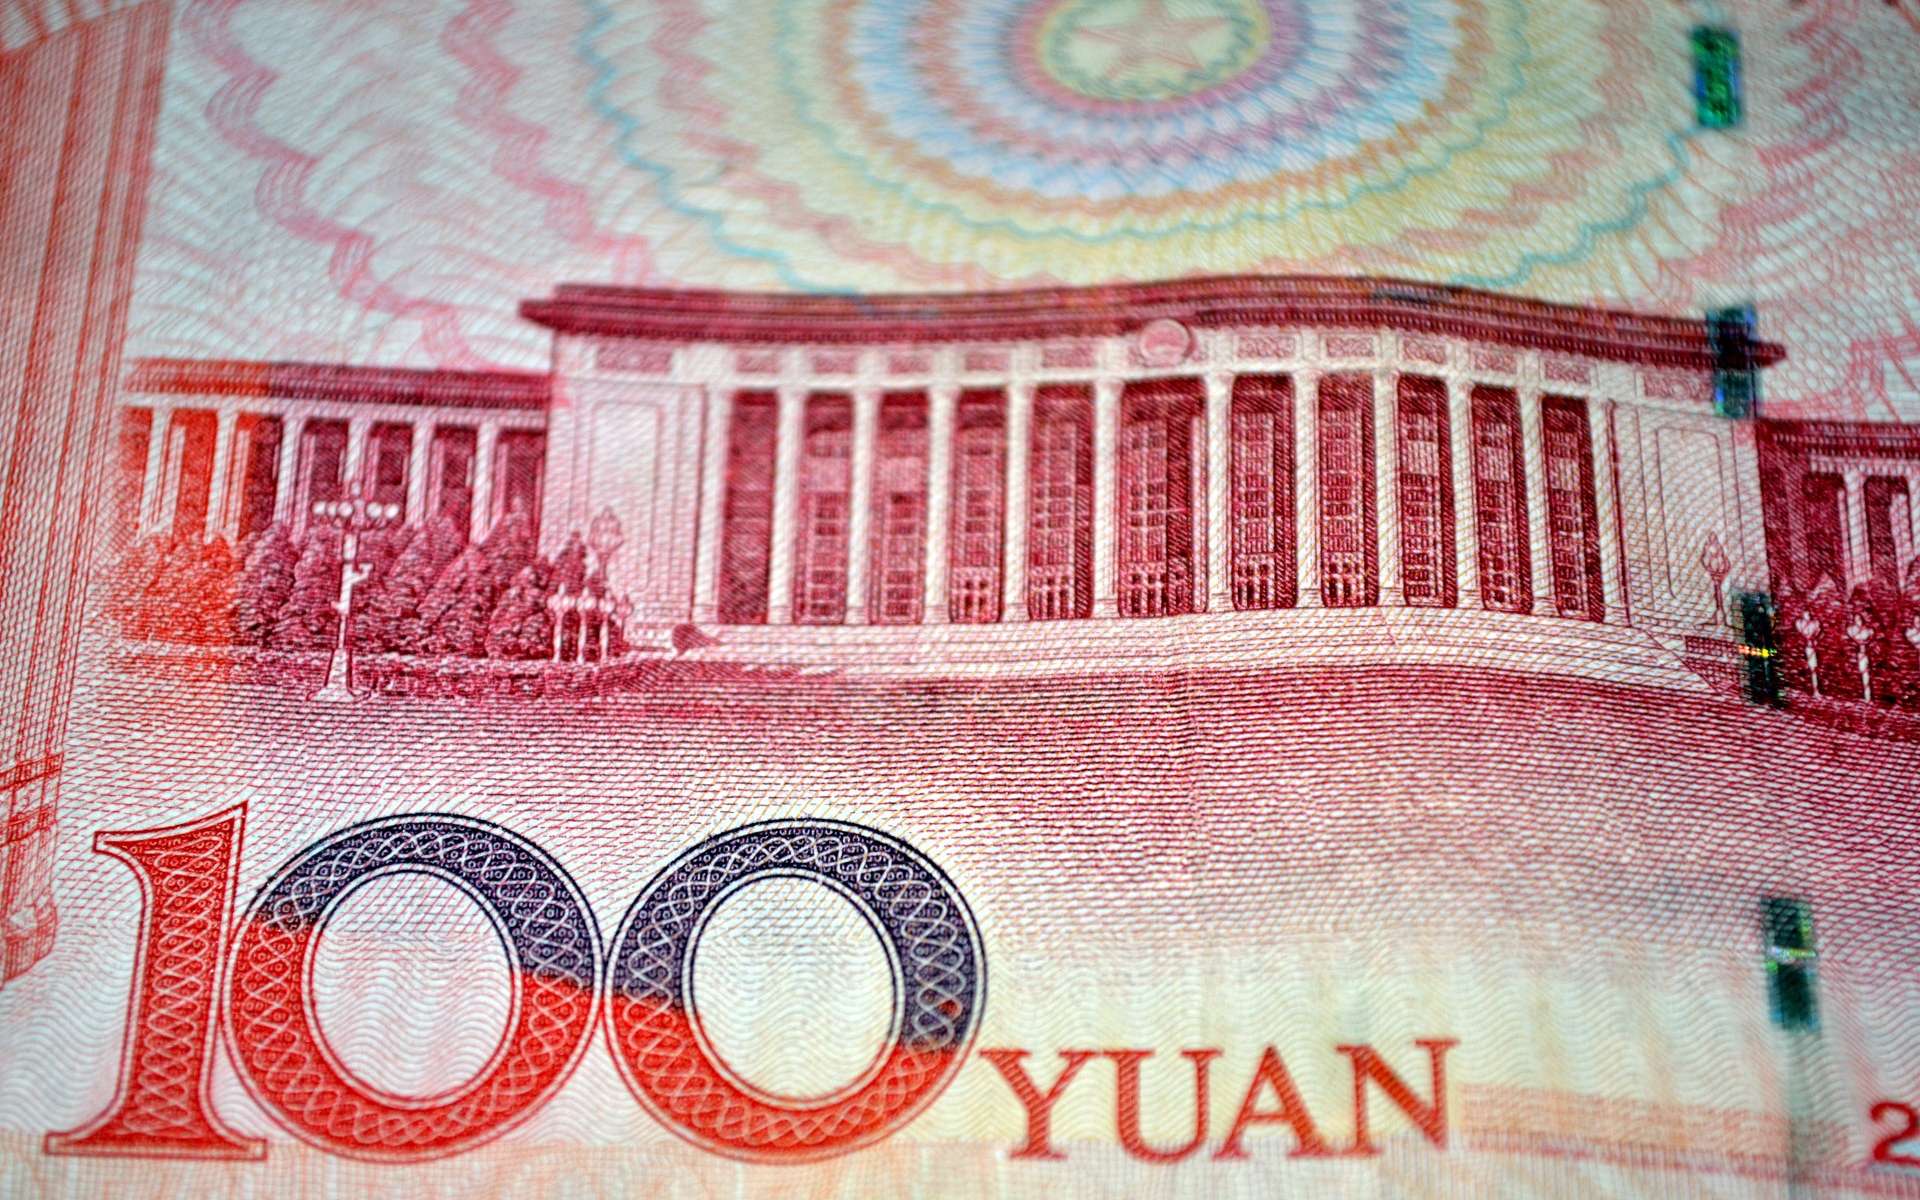 Comment la Chine se prépare au lancement de sa monnaie digitale de banque centrale